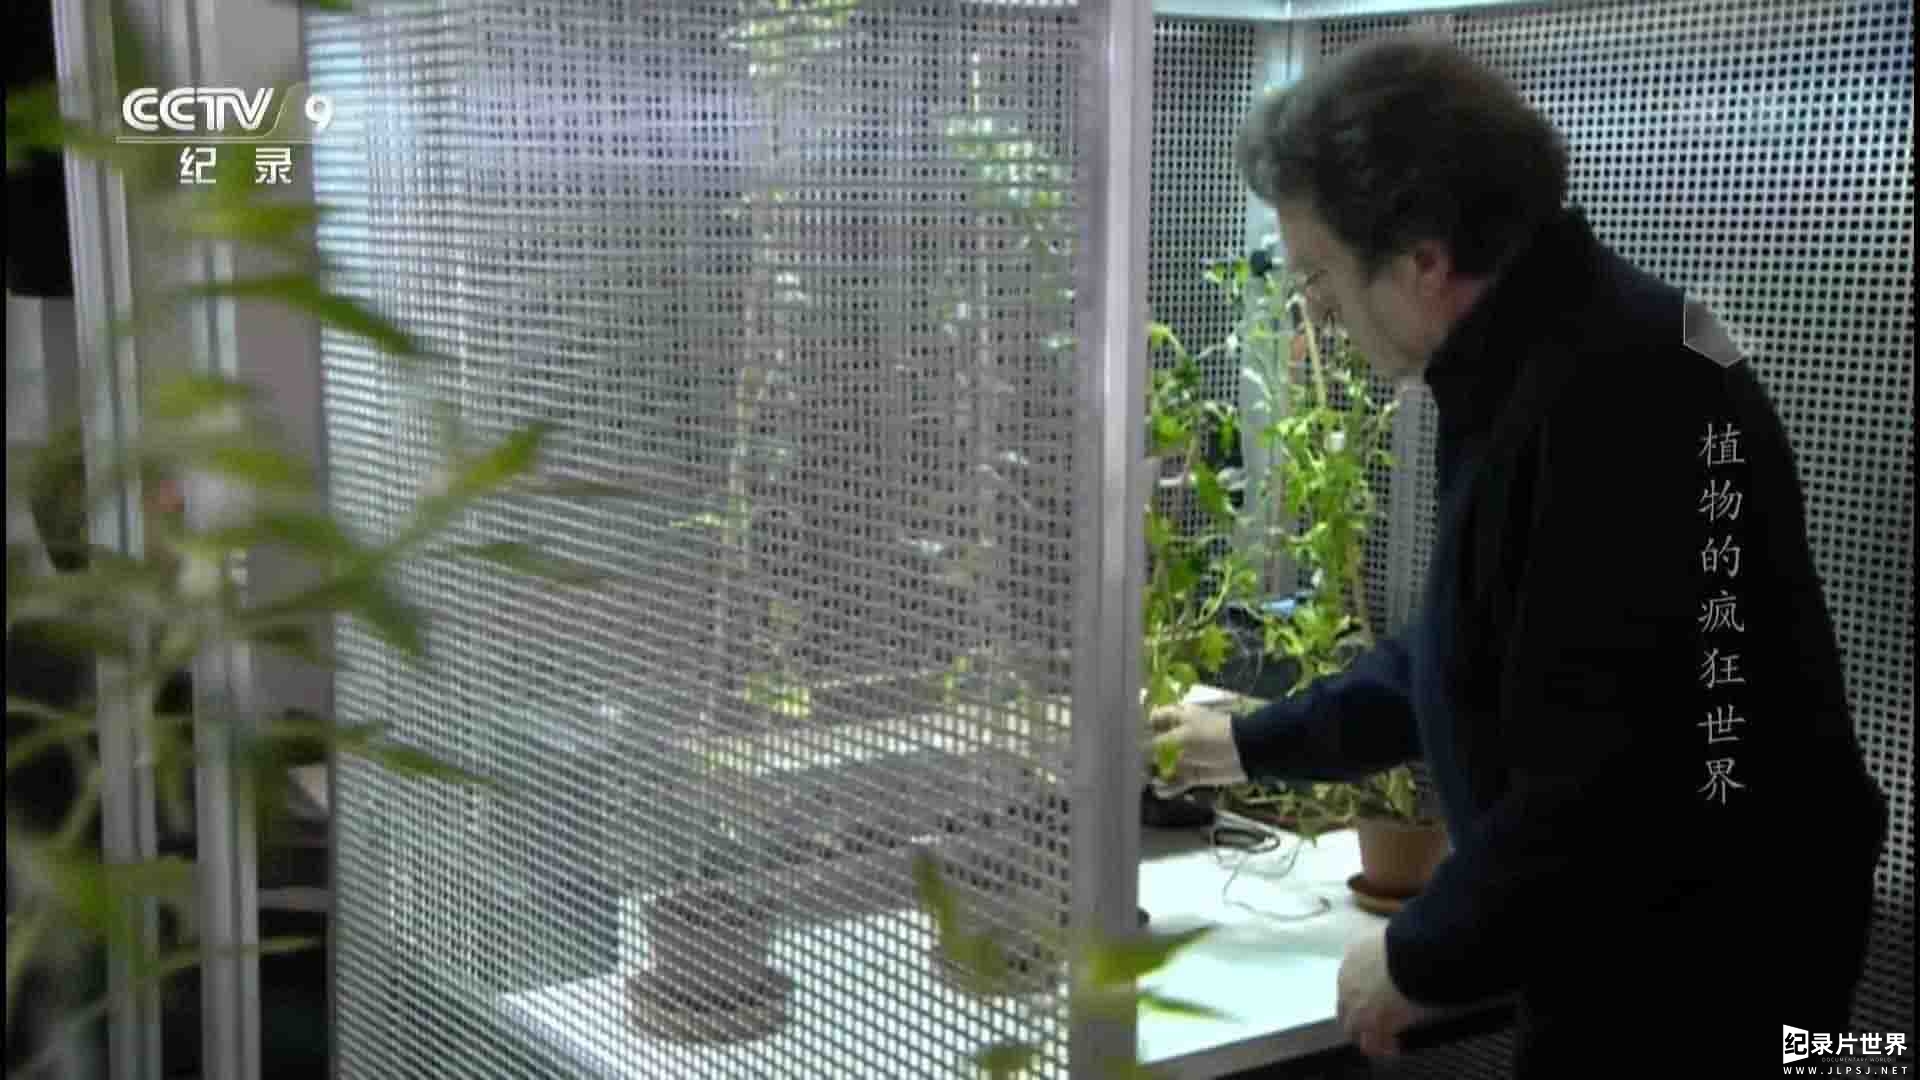 史密森频道/央视纪录片《植物的疯狂世界 Amazing Plants 2015》全1集